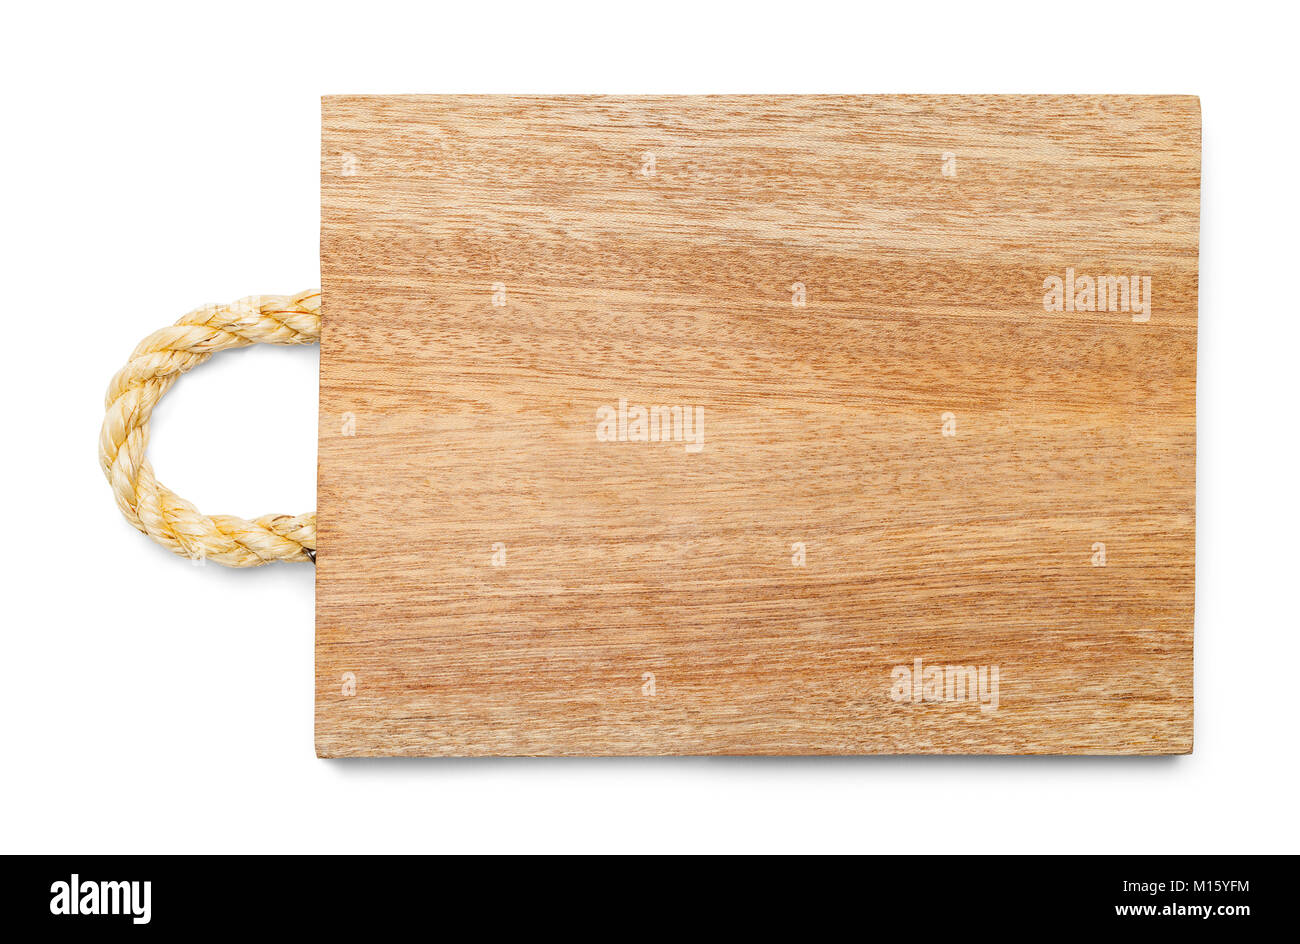 Holz Schneidebrett mit einem Seil Griff isoliert auf einem weißen Hintergrund. Stockfoto